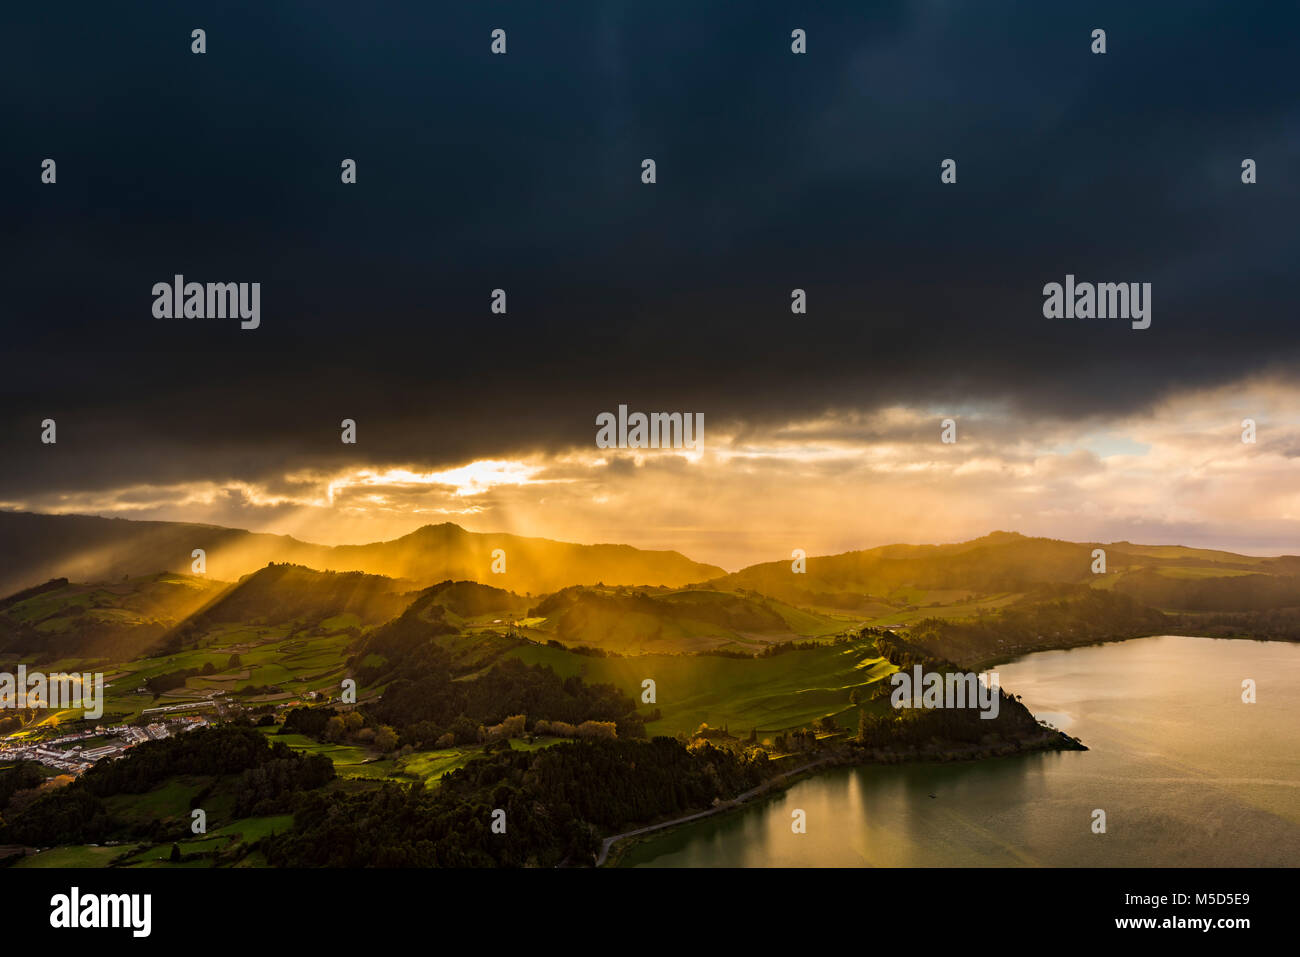 Furnassee mit hügeligen Landschaft und dramatische stimmungsvolle Beleuchtung, dunkle Wolken, Furnas, Sao Miguel, Azoren, Portugal Stockfoto